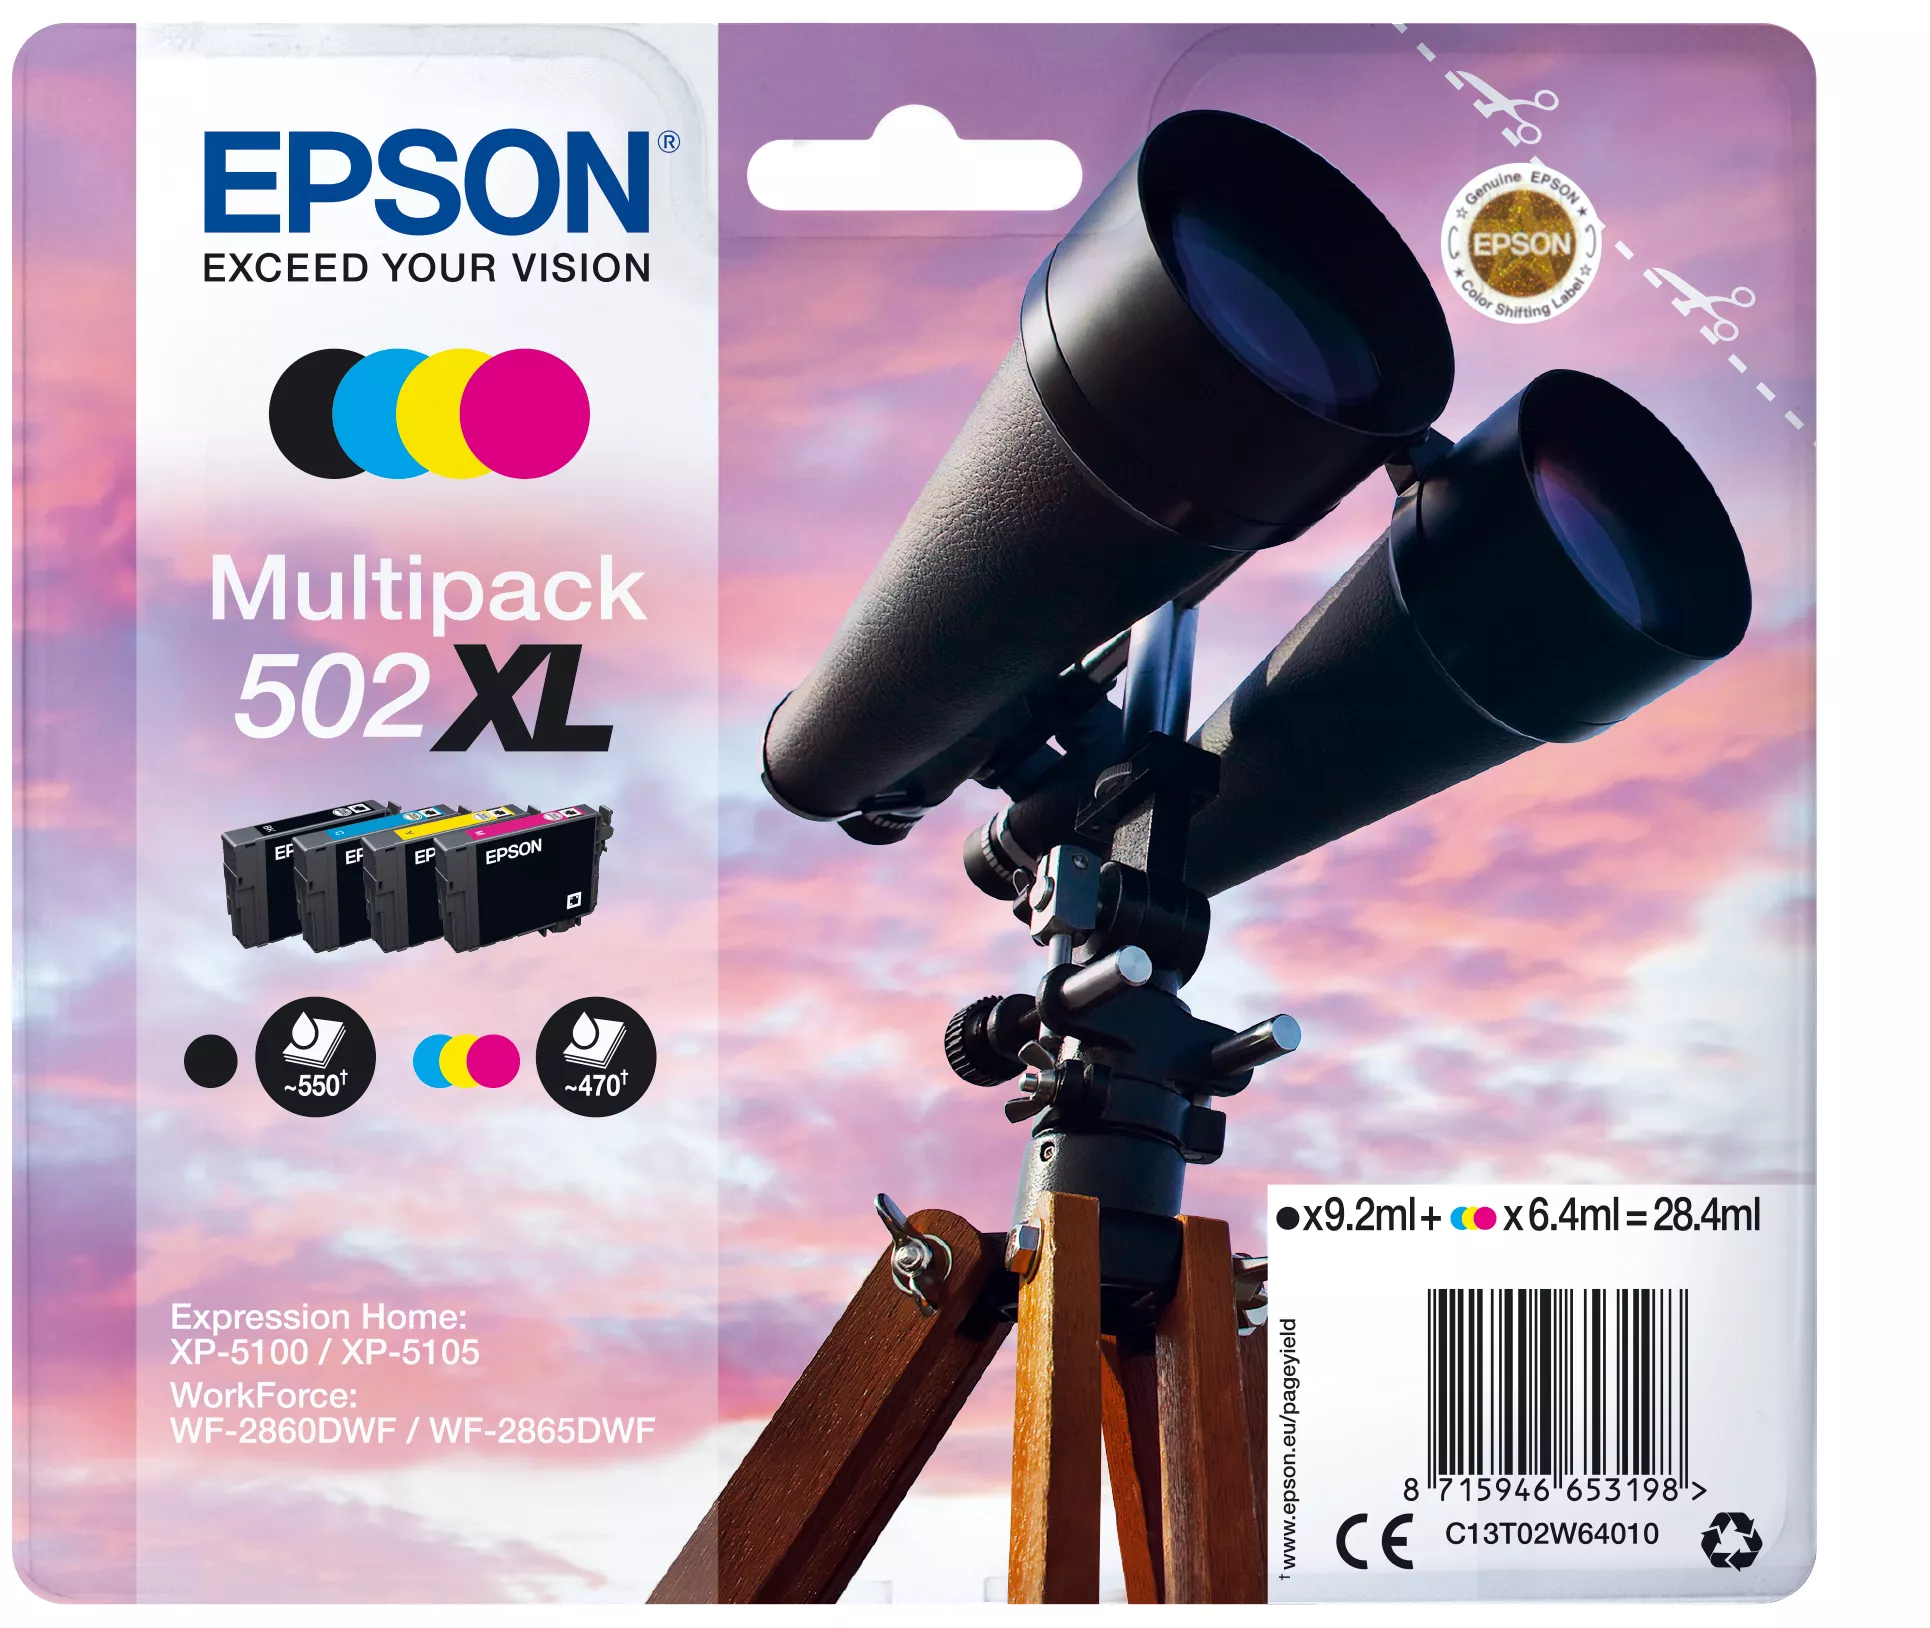 Achat EPSON Multipack 4-colours 502XL Ink SEC au meilleur prix